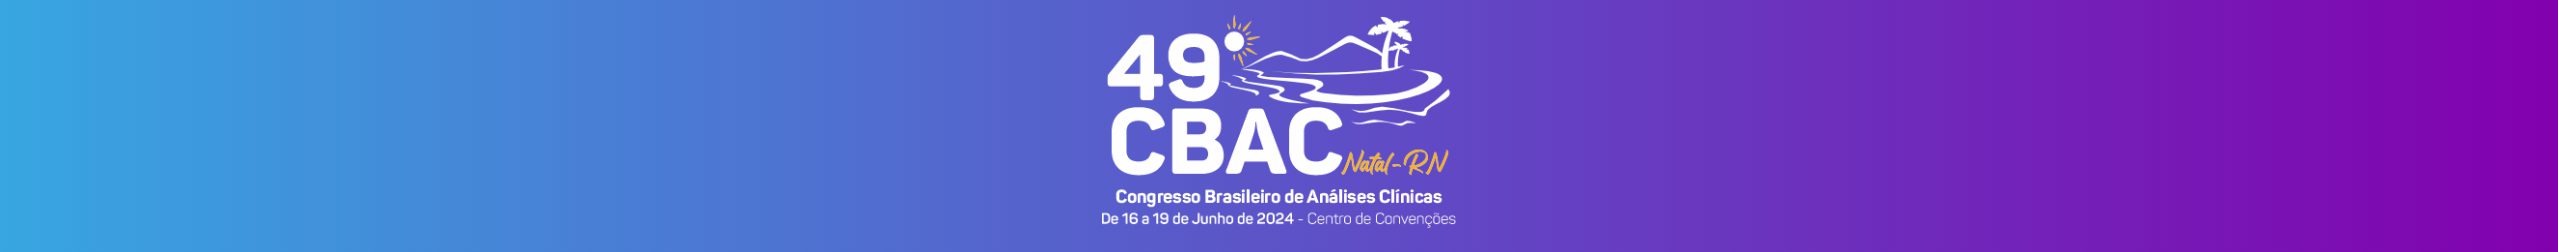 Brasil Apoio marca presença no Congresso de Análises Clínicas, que acontece em Natal, de 17 a 19 de junho